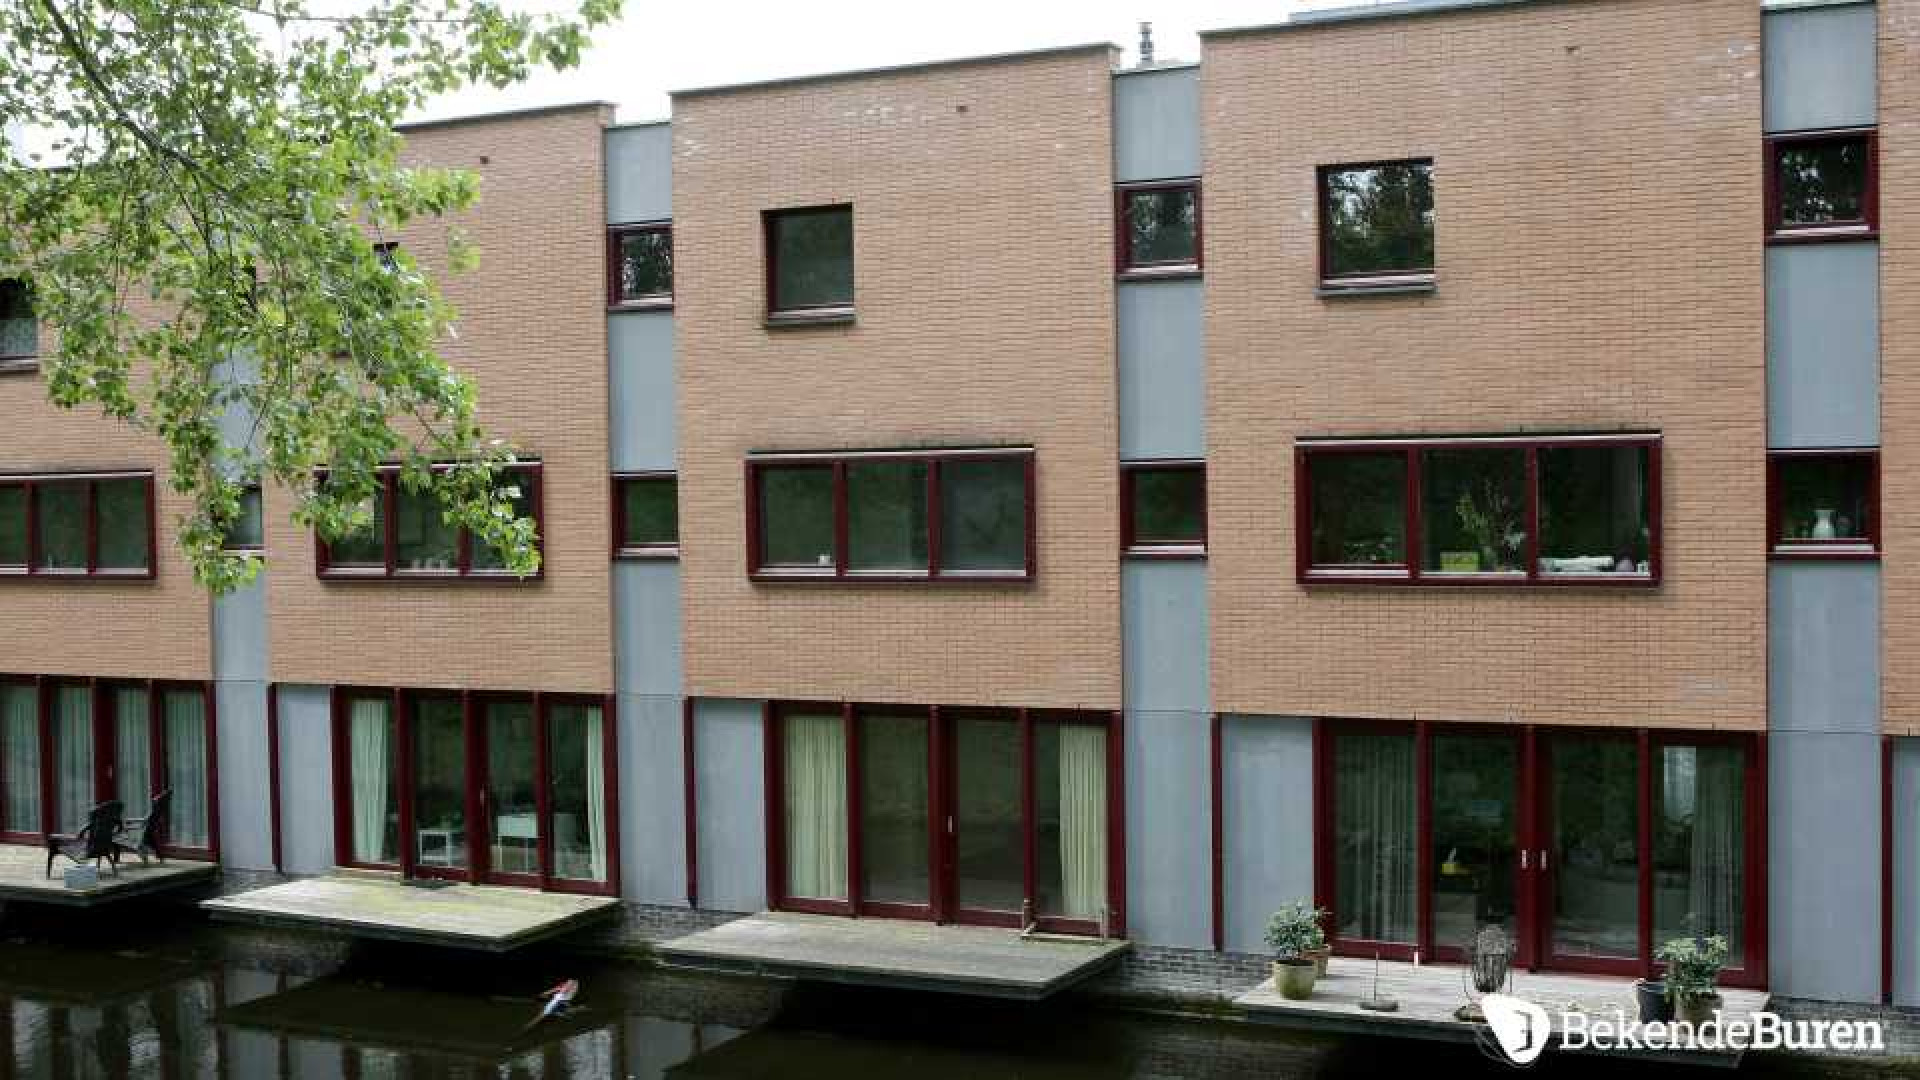 Jan Kooijman verruilt Rotterdam voor Amsterdam. Zie foto's